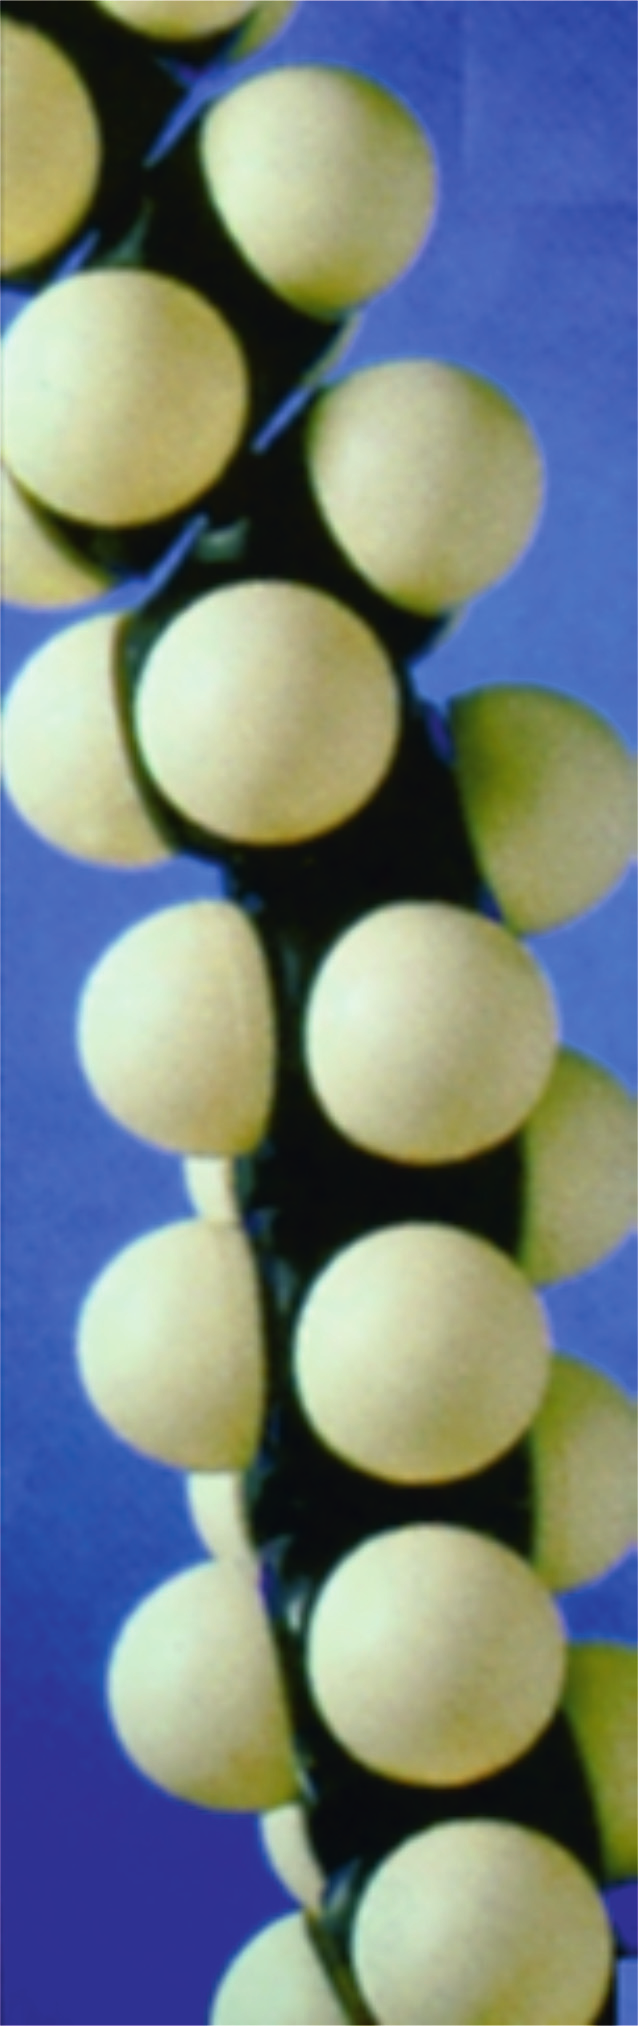 Απεικόνιση πολυαιθυλενίου με μοριακό μοντέλο σε συμπαγή μορφή.